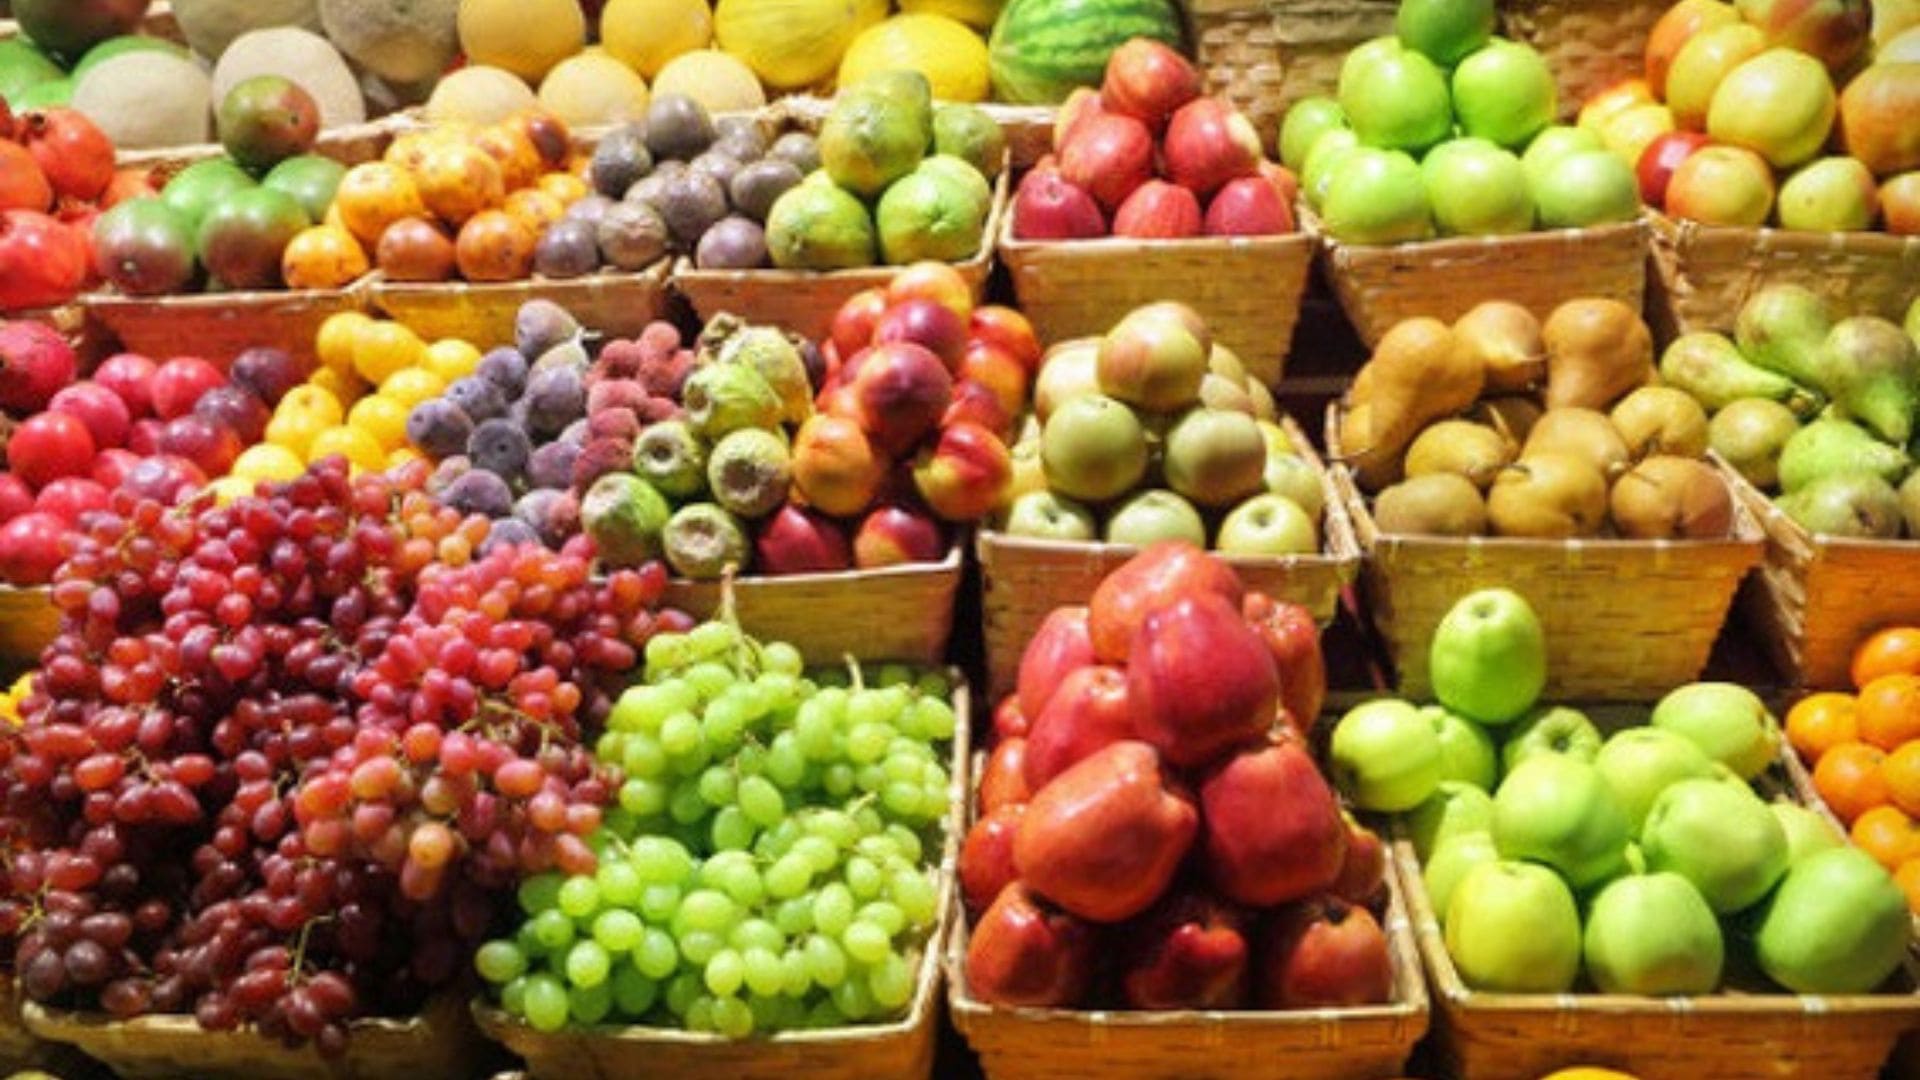 Cửa Hàng Trái Cây 243 - Cung cấp đa dạng các loại trái cây